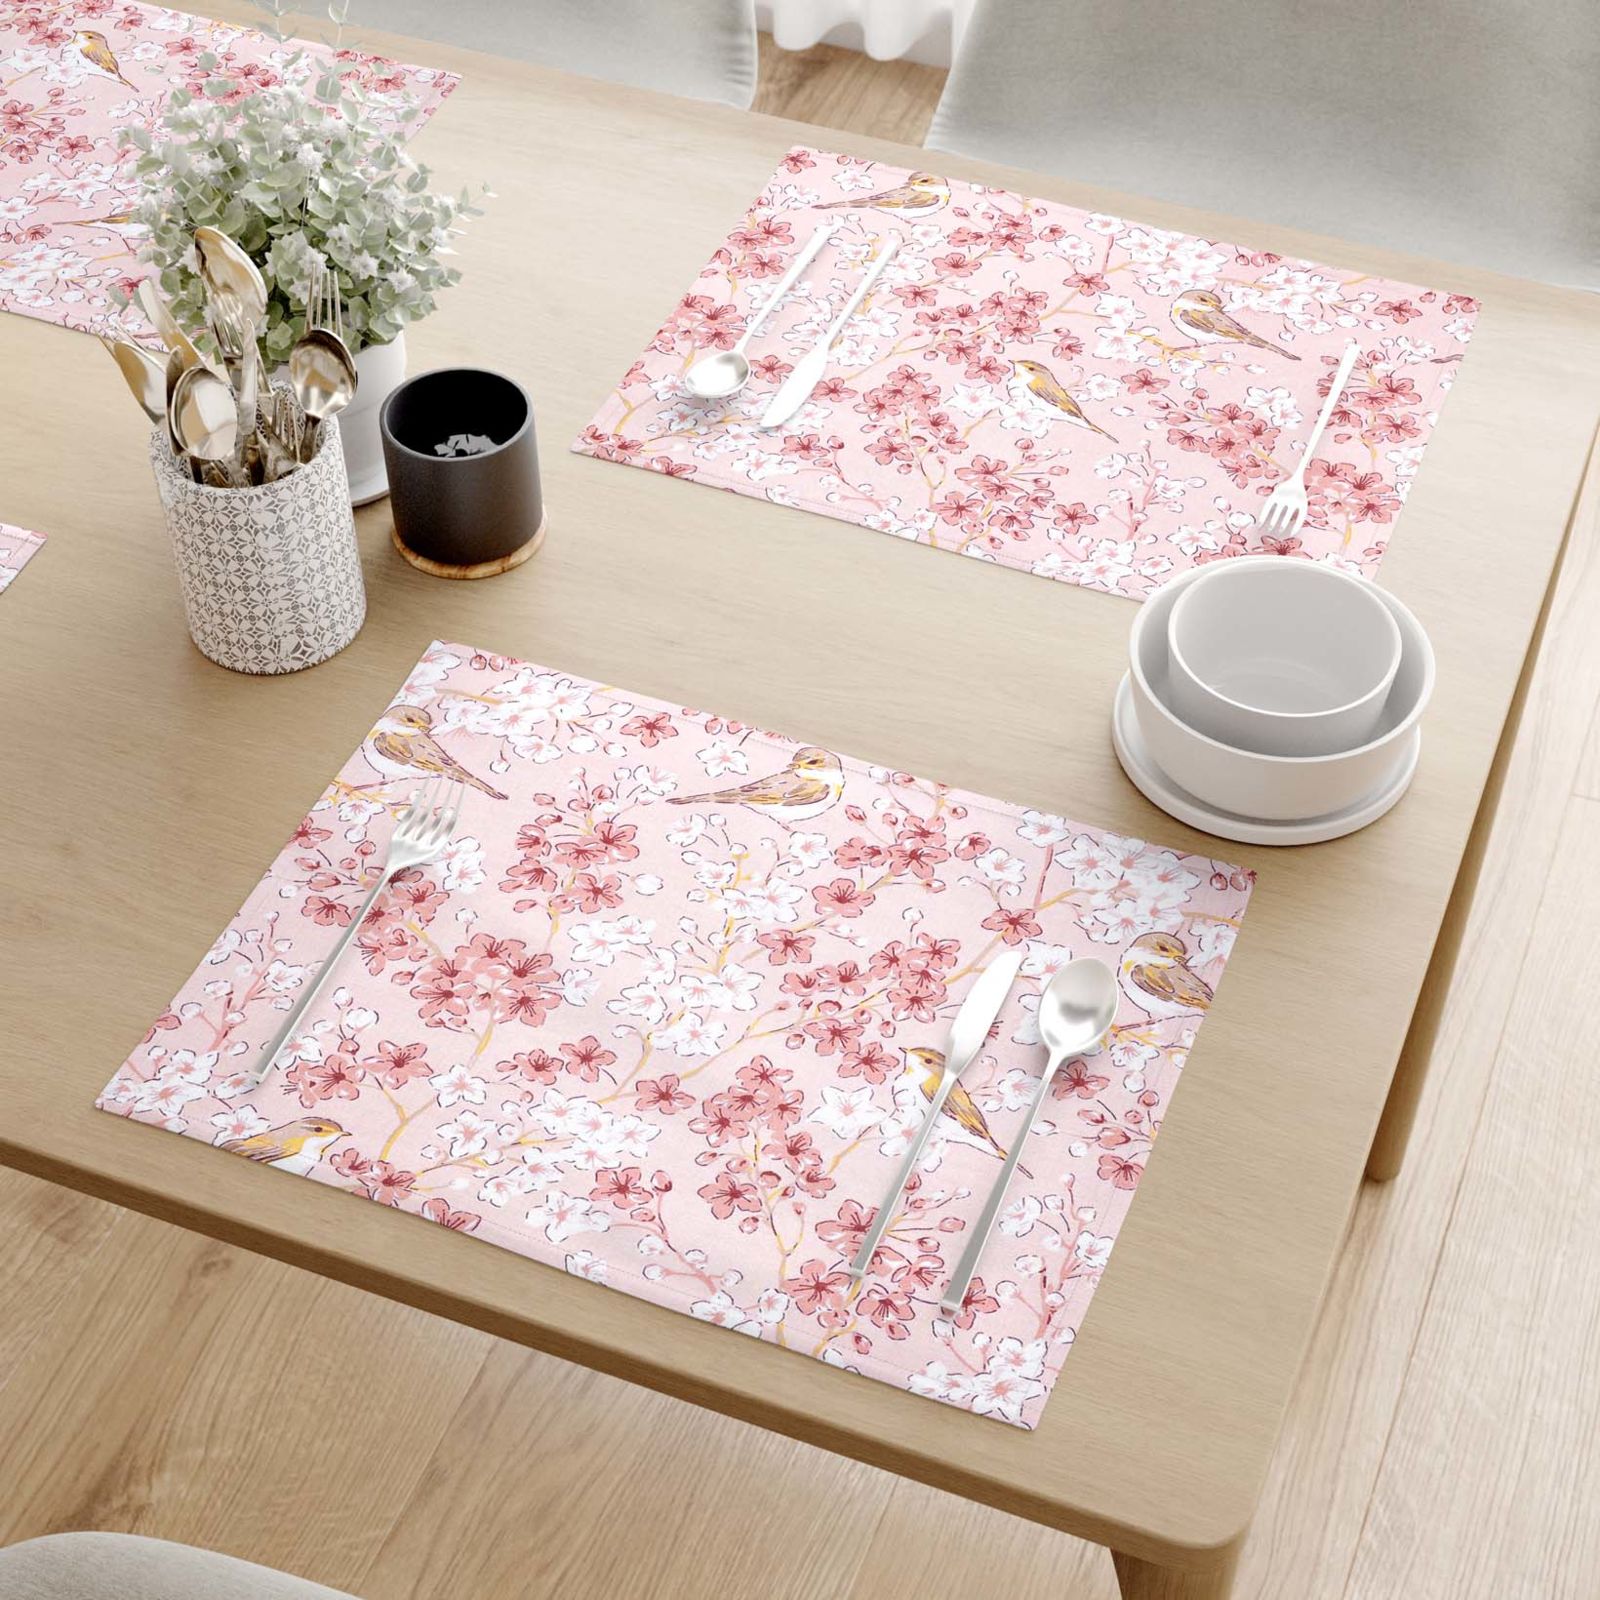 Prestieranie na stôl 100% bavlnené plátno - vtáčiky v ružovej záhrade - sada 2ks